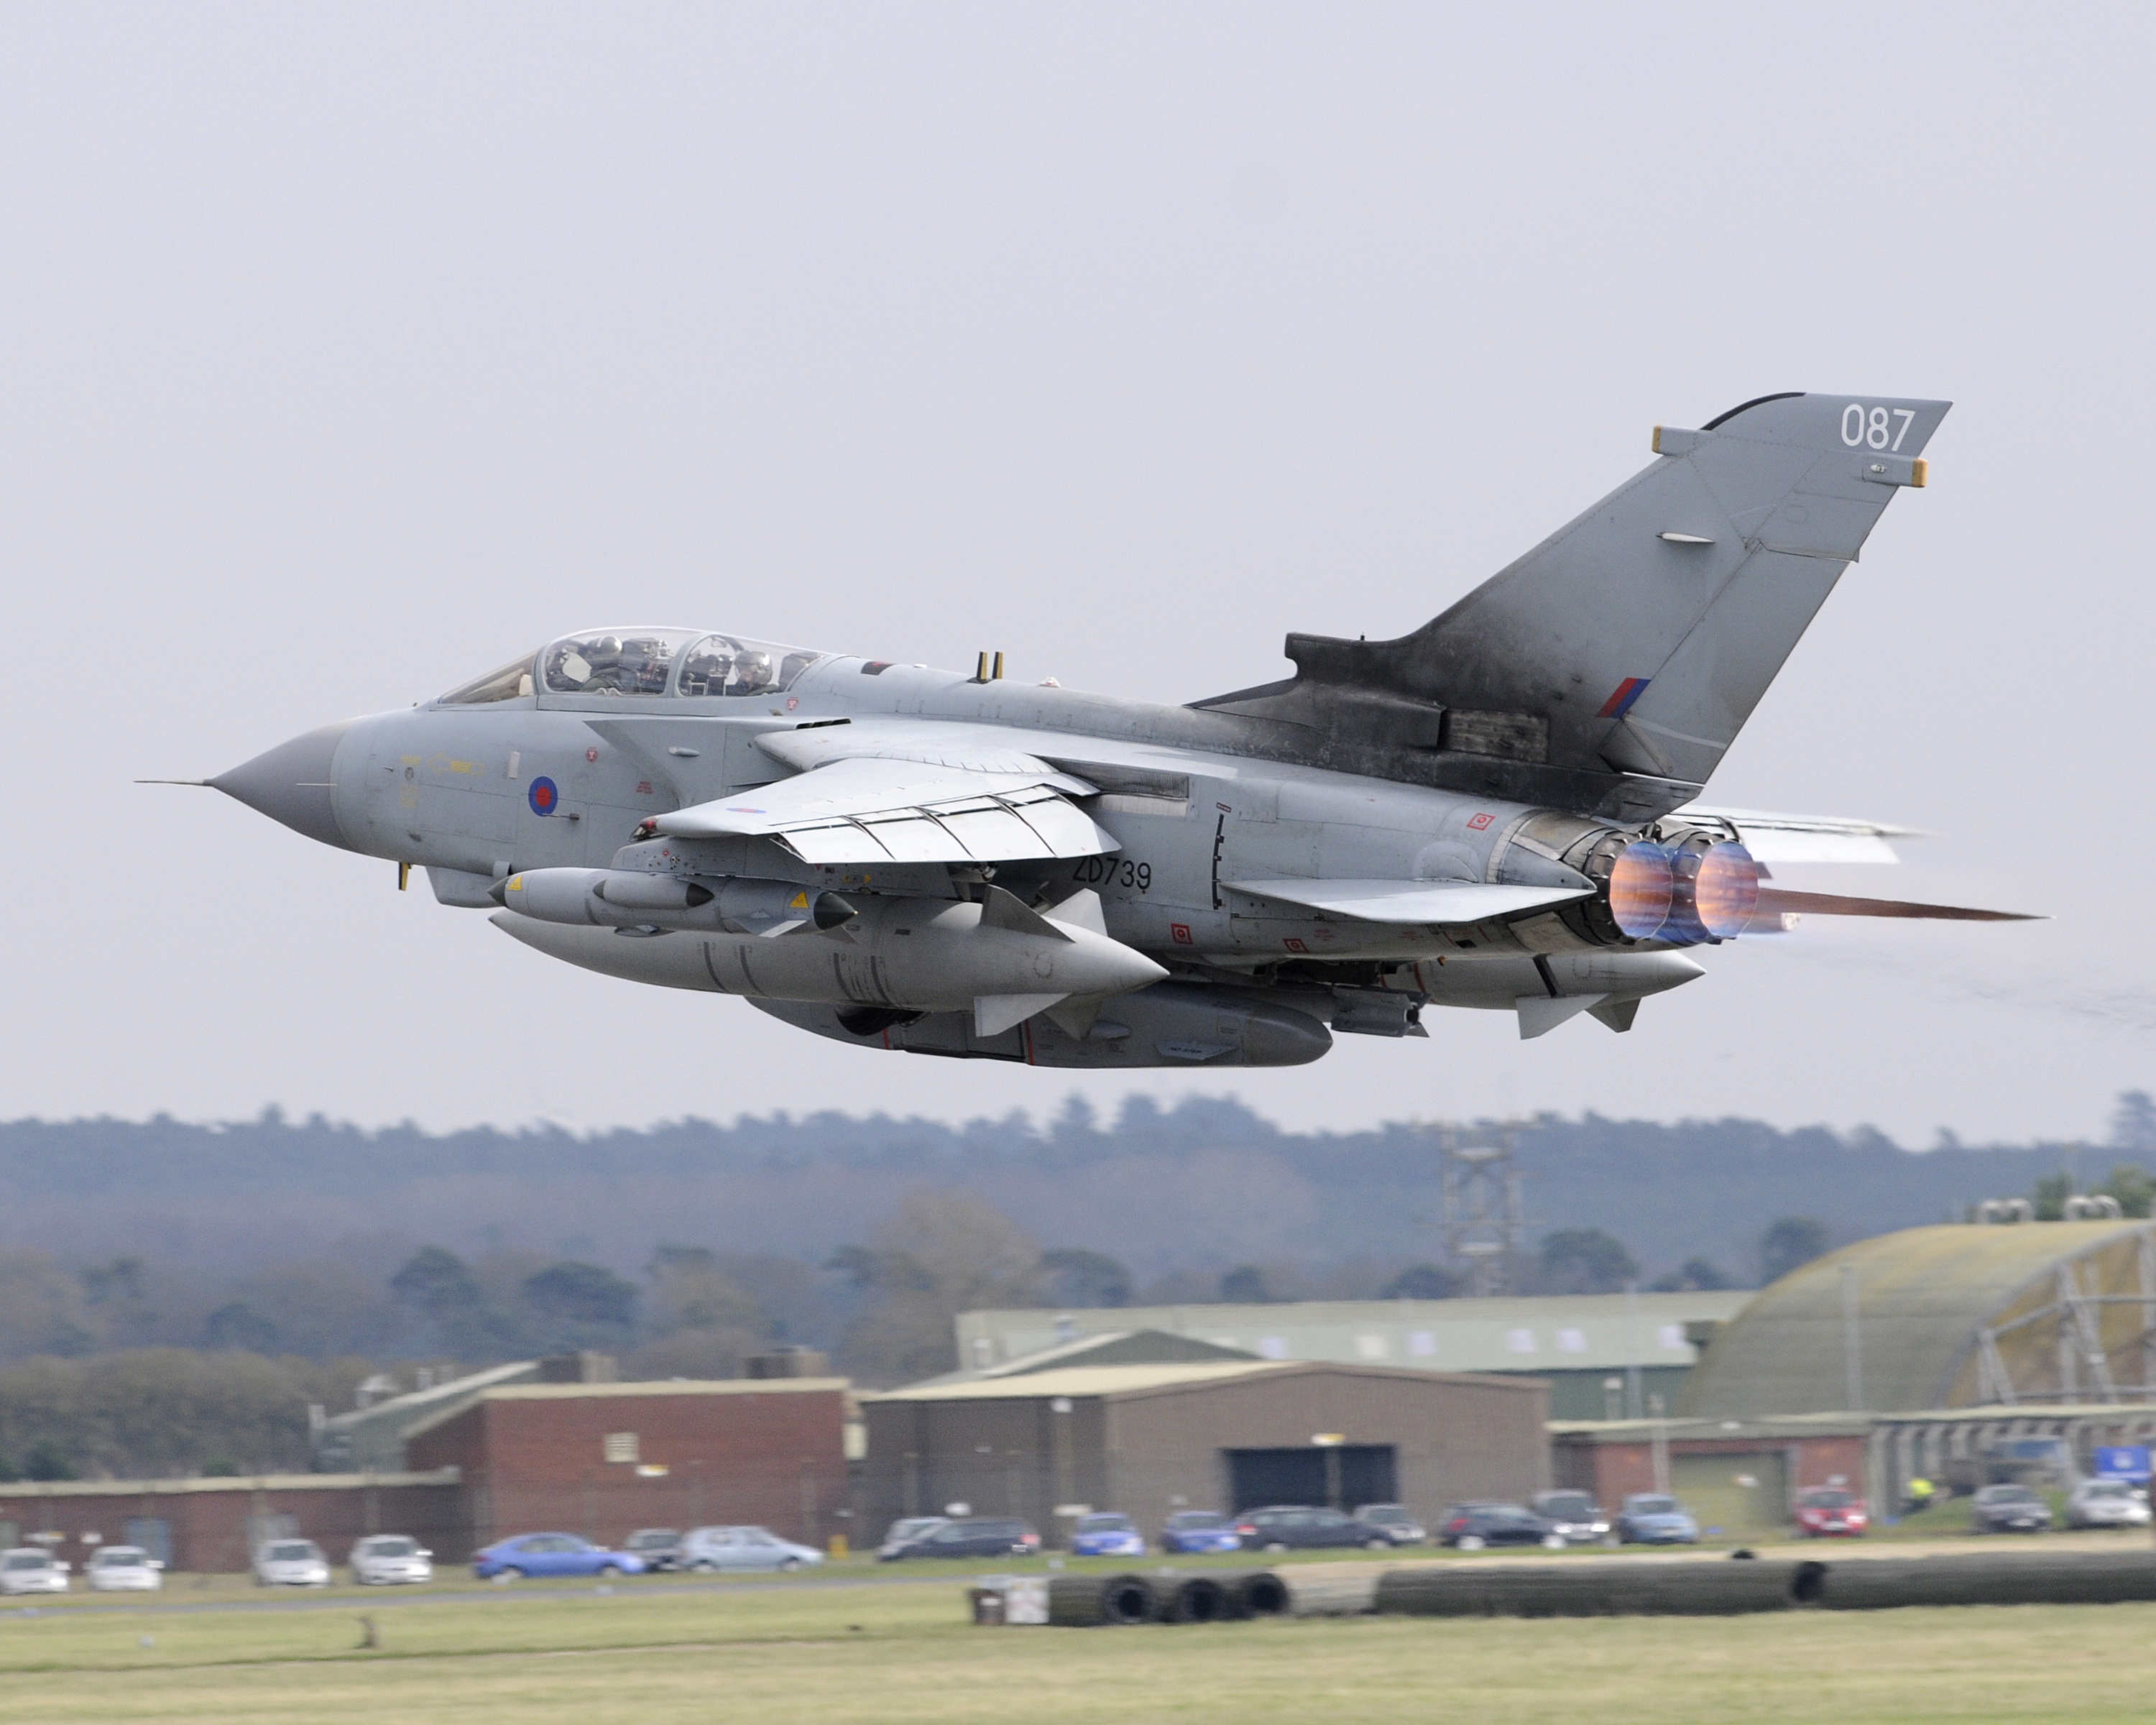 File:Royal Air Force Tornado GR4 from RAF Marham MOD 45152535.jpg ...